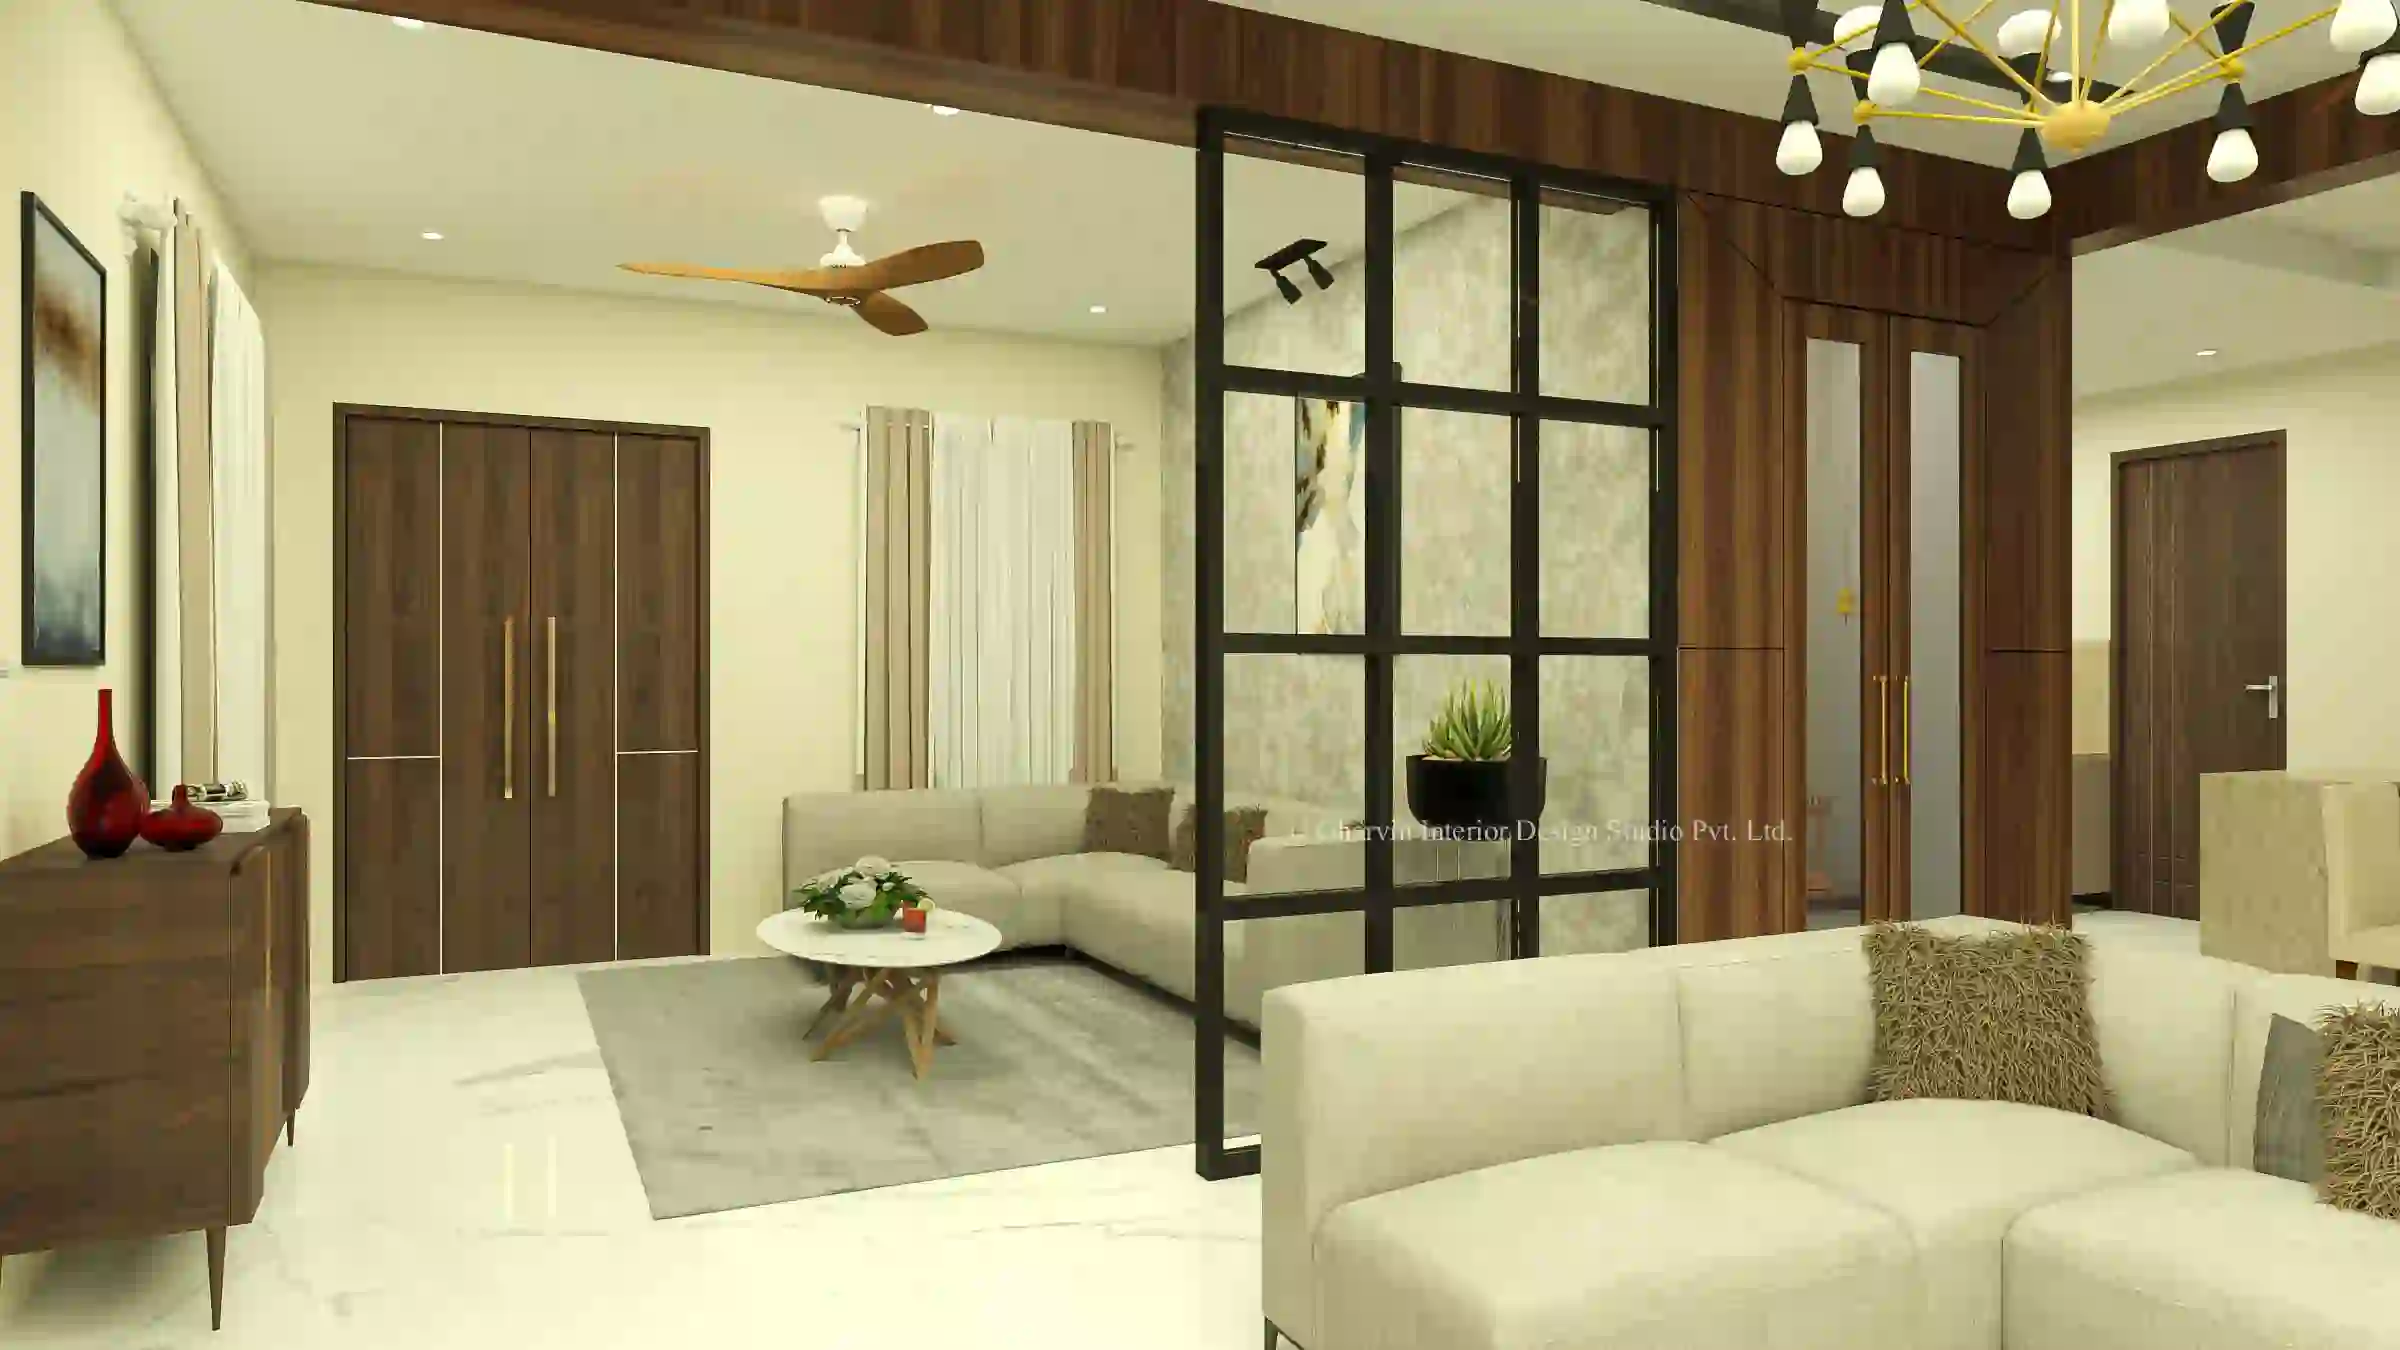 ड्राइंग रूम के लिए यहां देखें भारत के ट्रेंडिंग Sofa Set की लिस्ट मार्केट  से भी ज्यादा अट्रैक्टिव हैं डिजाइन - Best Sofa Set For Drawing Room To Give  Your Home A